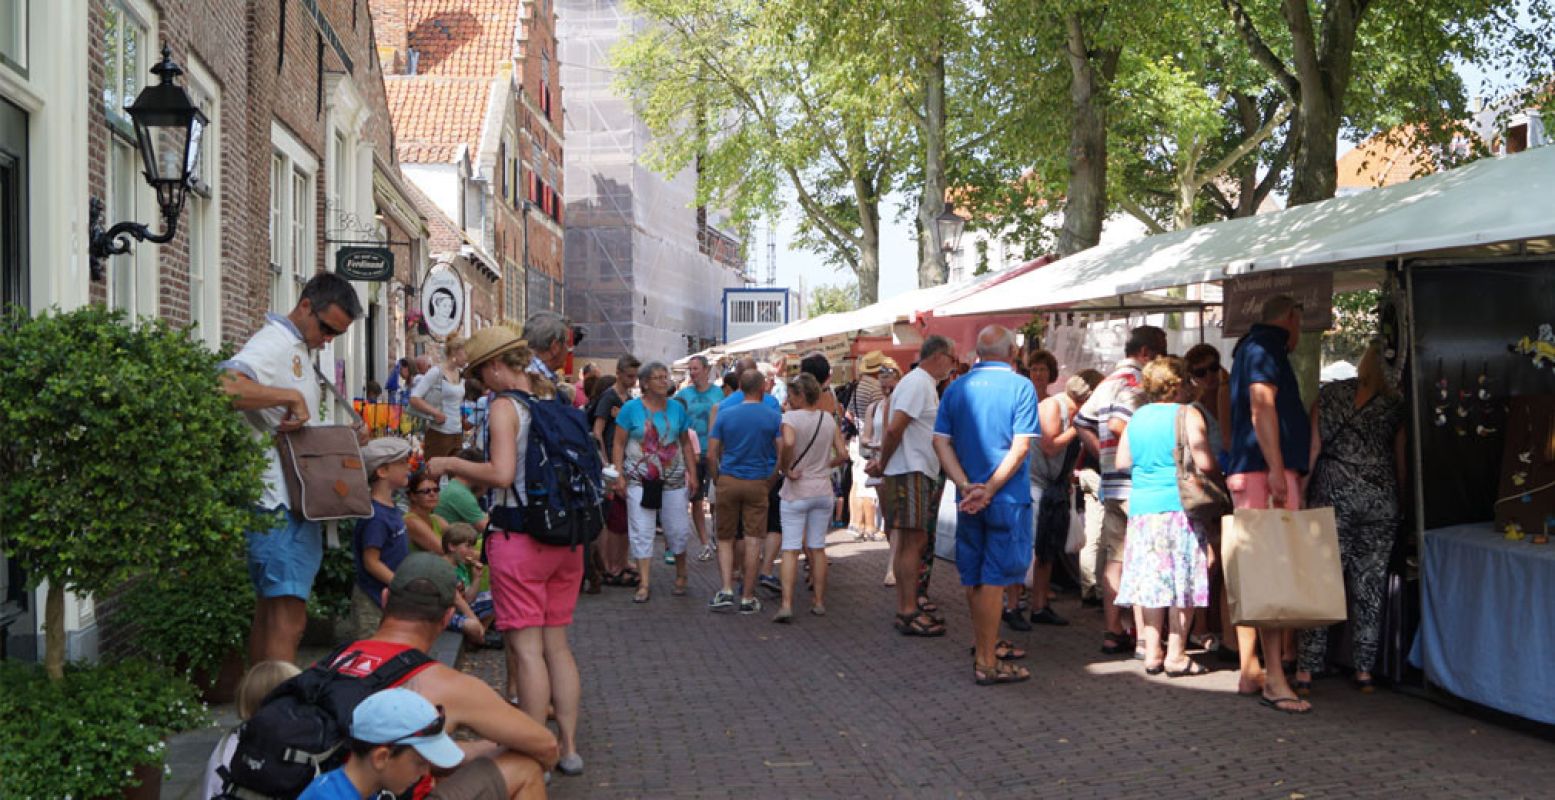 De historische markt trekt in de zomermaanden veel publiek naar Veere. Foto: Redactie DagjeWeg.NL © Grytsje Anna Pietersma